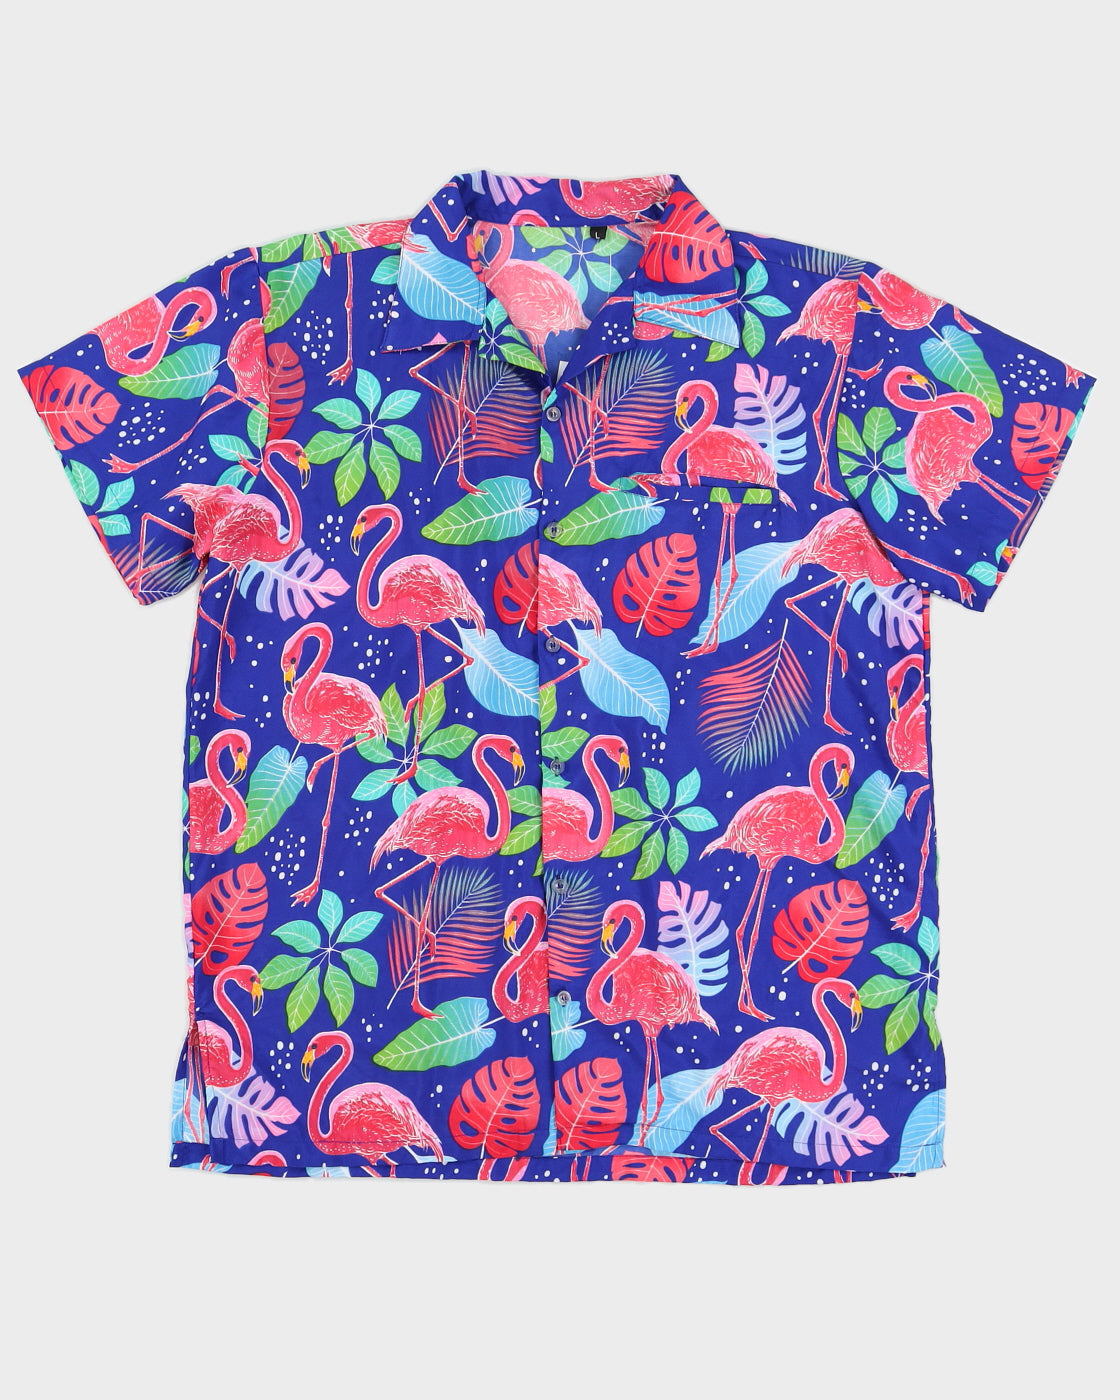 Blue And Pink Patterned Hawaiian Shirt - XL